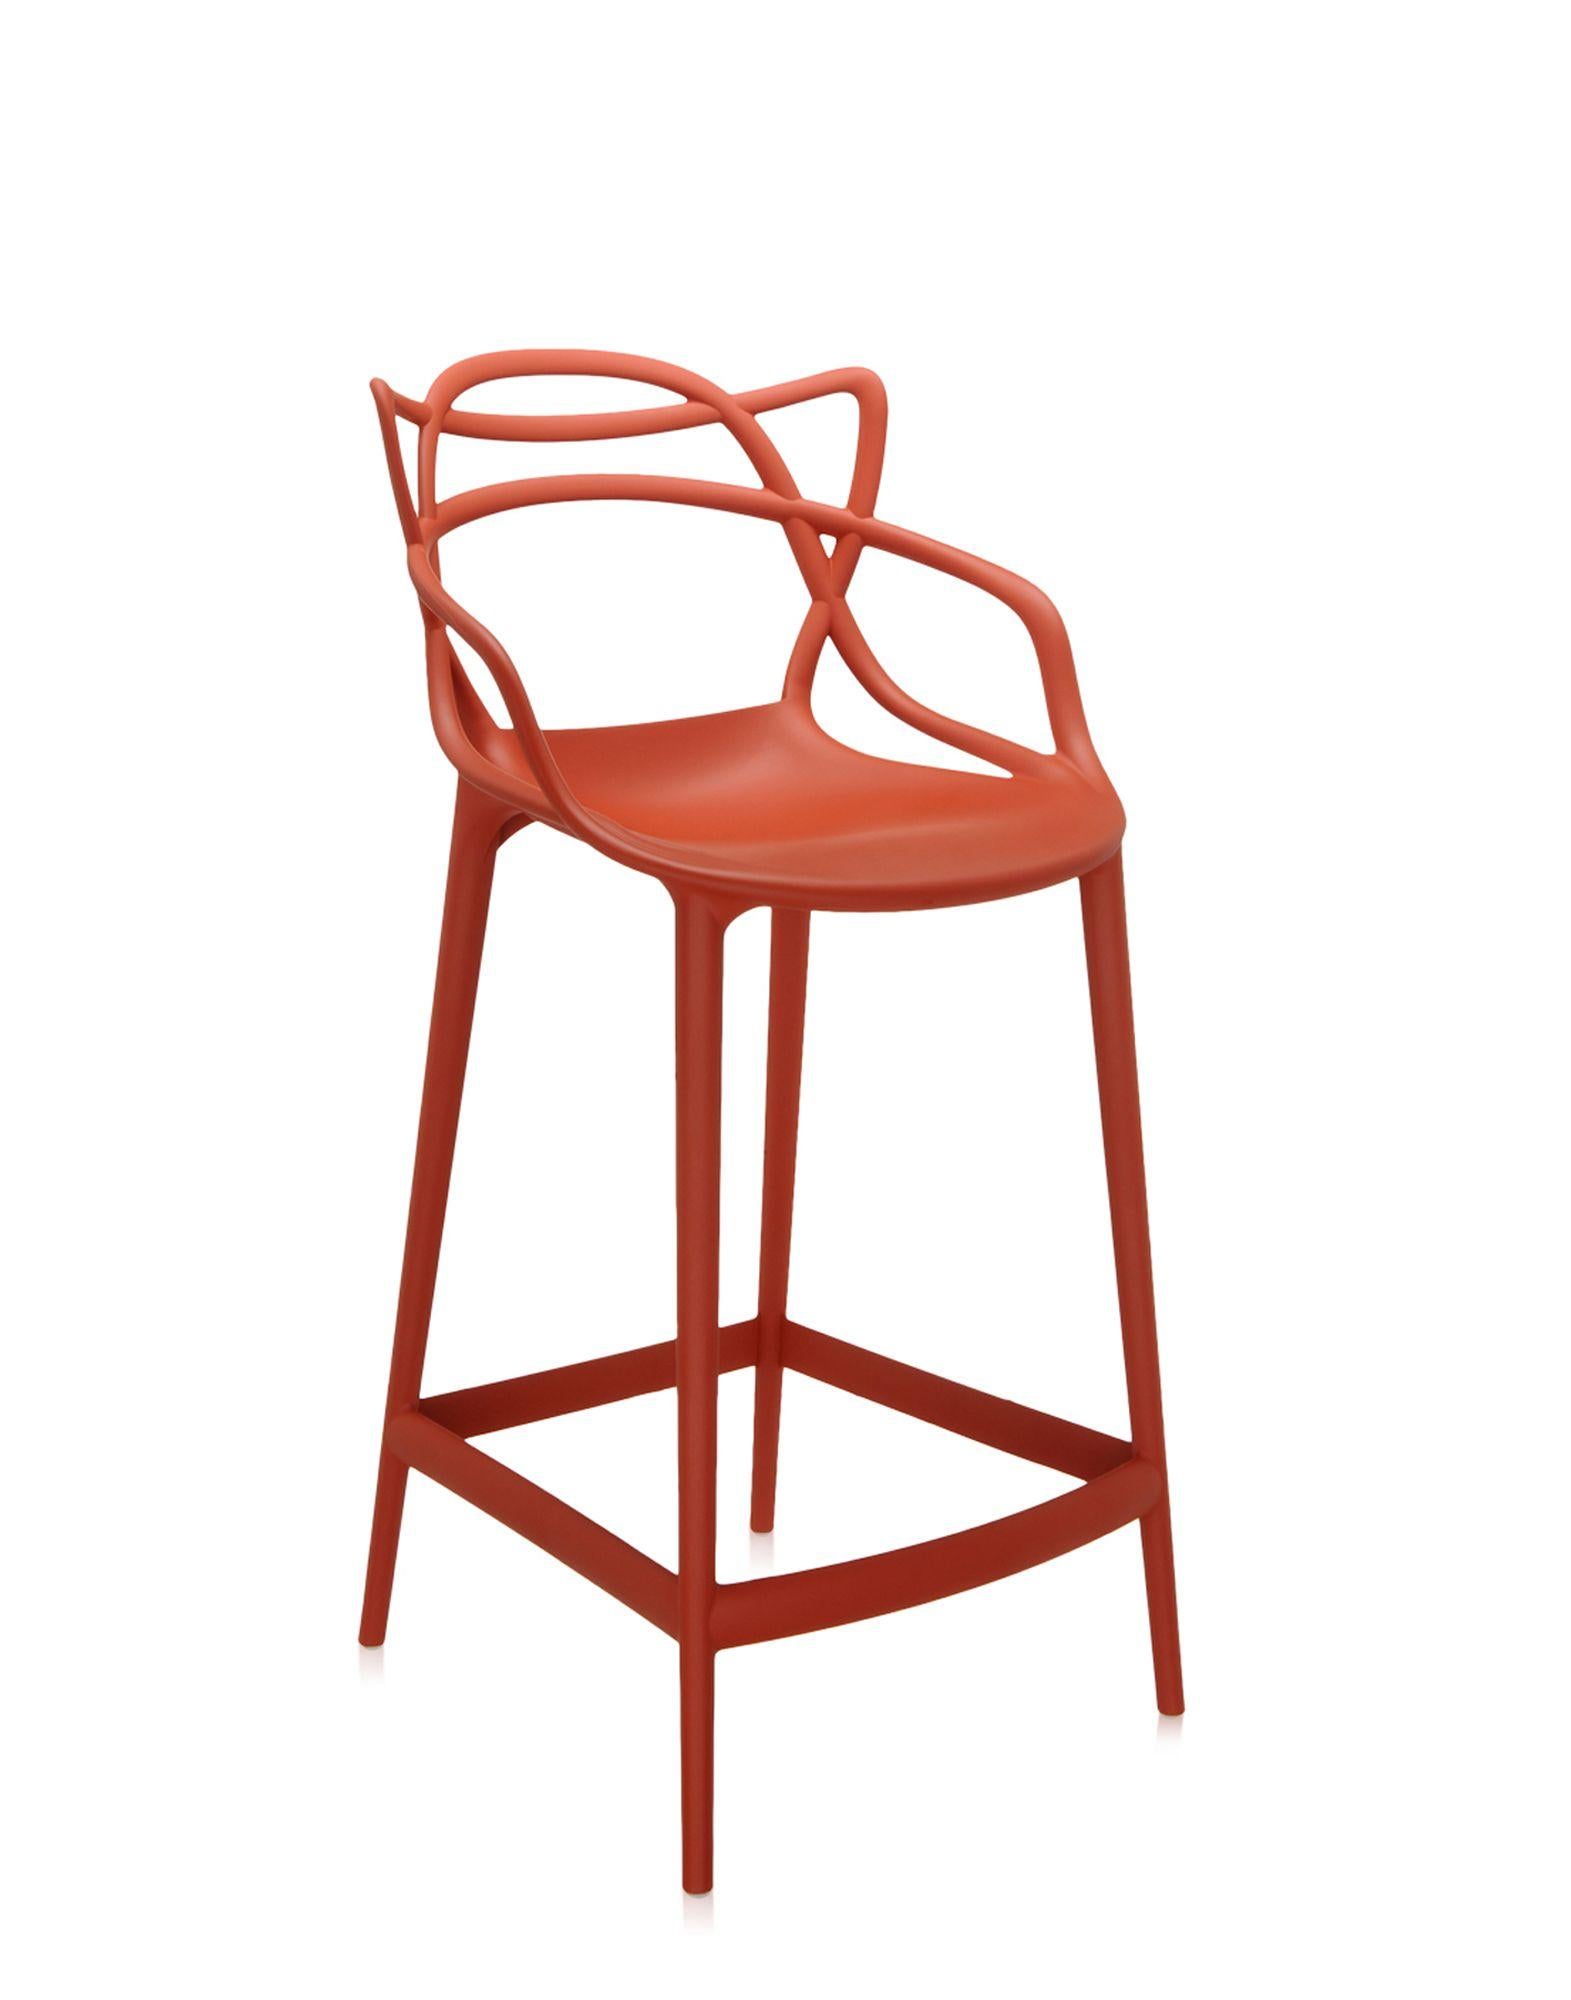 Kartell bietet auch eine Hocker-Version des Masters Stuhls an, der mit dem Good Design Award 2010 und dem Red Dot Award 2013 ausgezeichnet wurde und weltweit ein Bestseller ist. Die Beine sind verlängert und die Sitzfläche geschrumpft, aber der